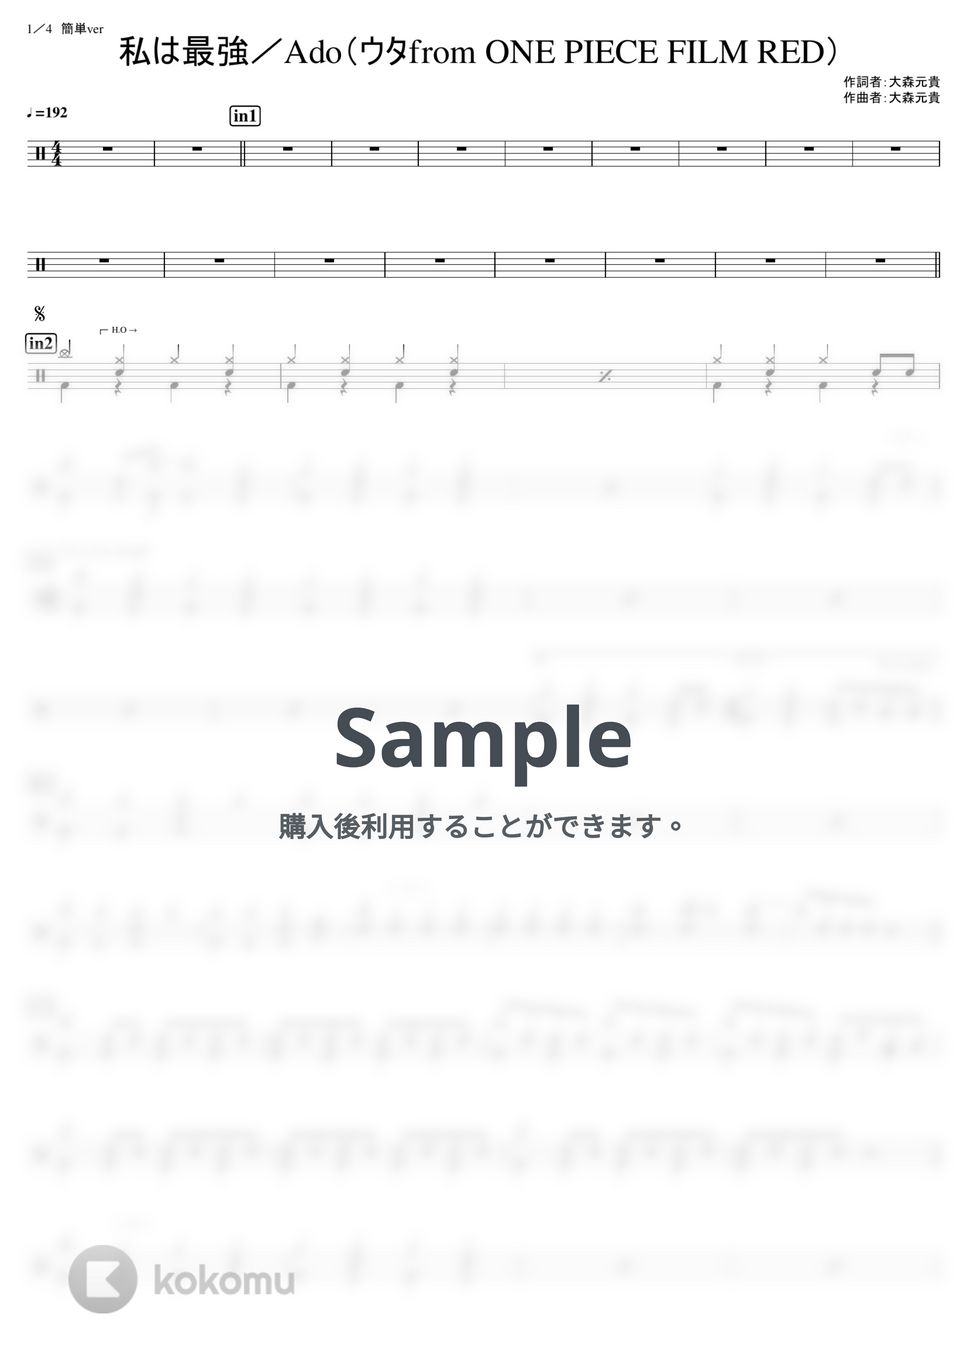 Ado (ウタfrom ONE PIECE) - 私は最強 (初級) by kamishinjo-drum-school